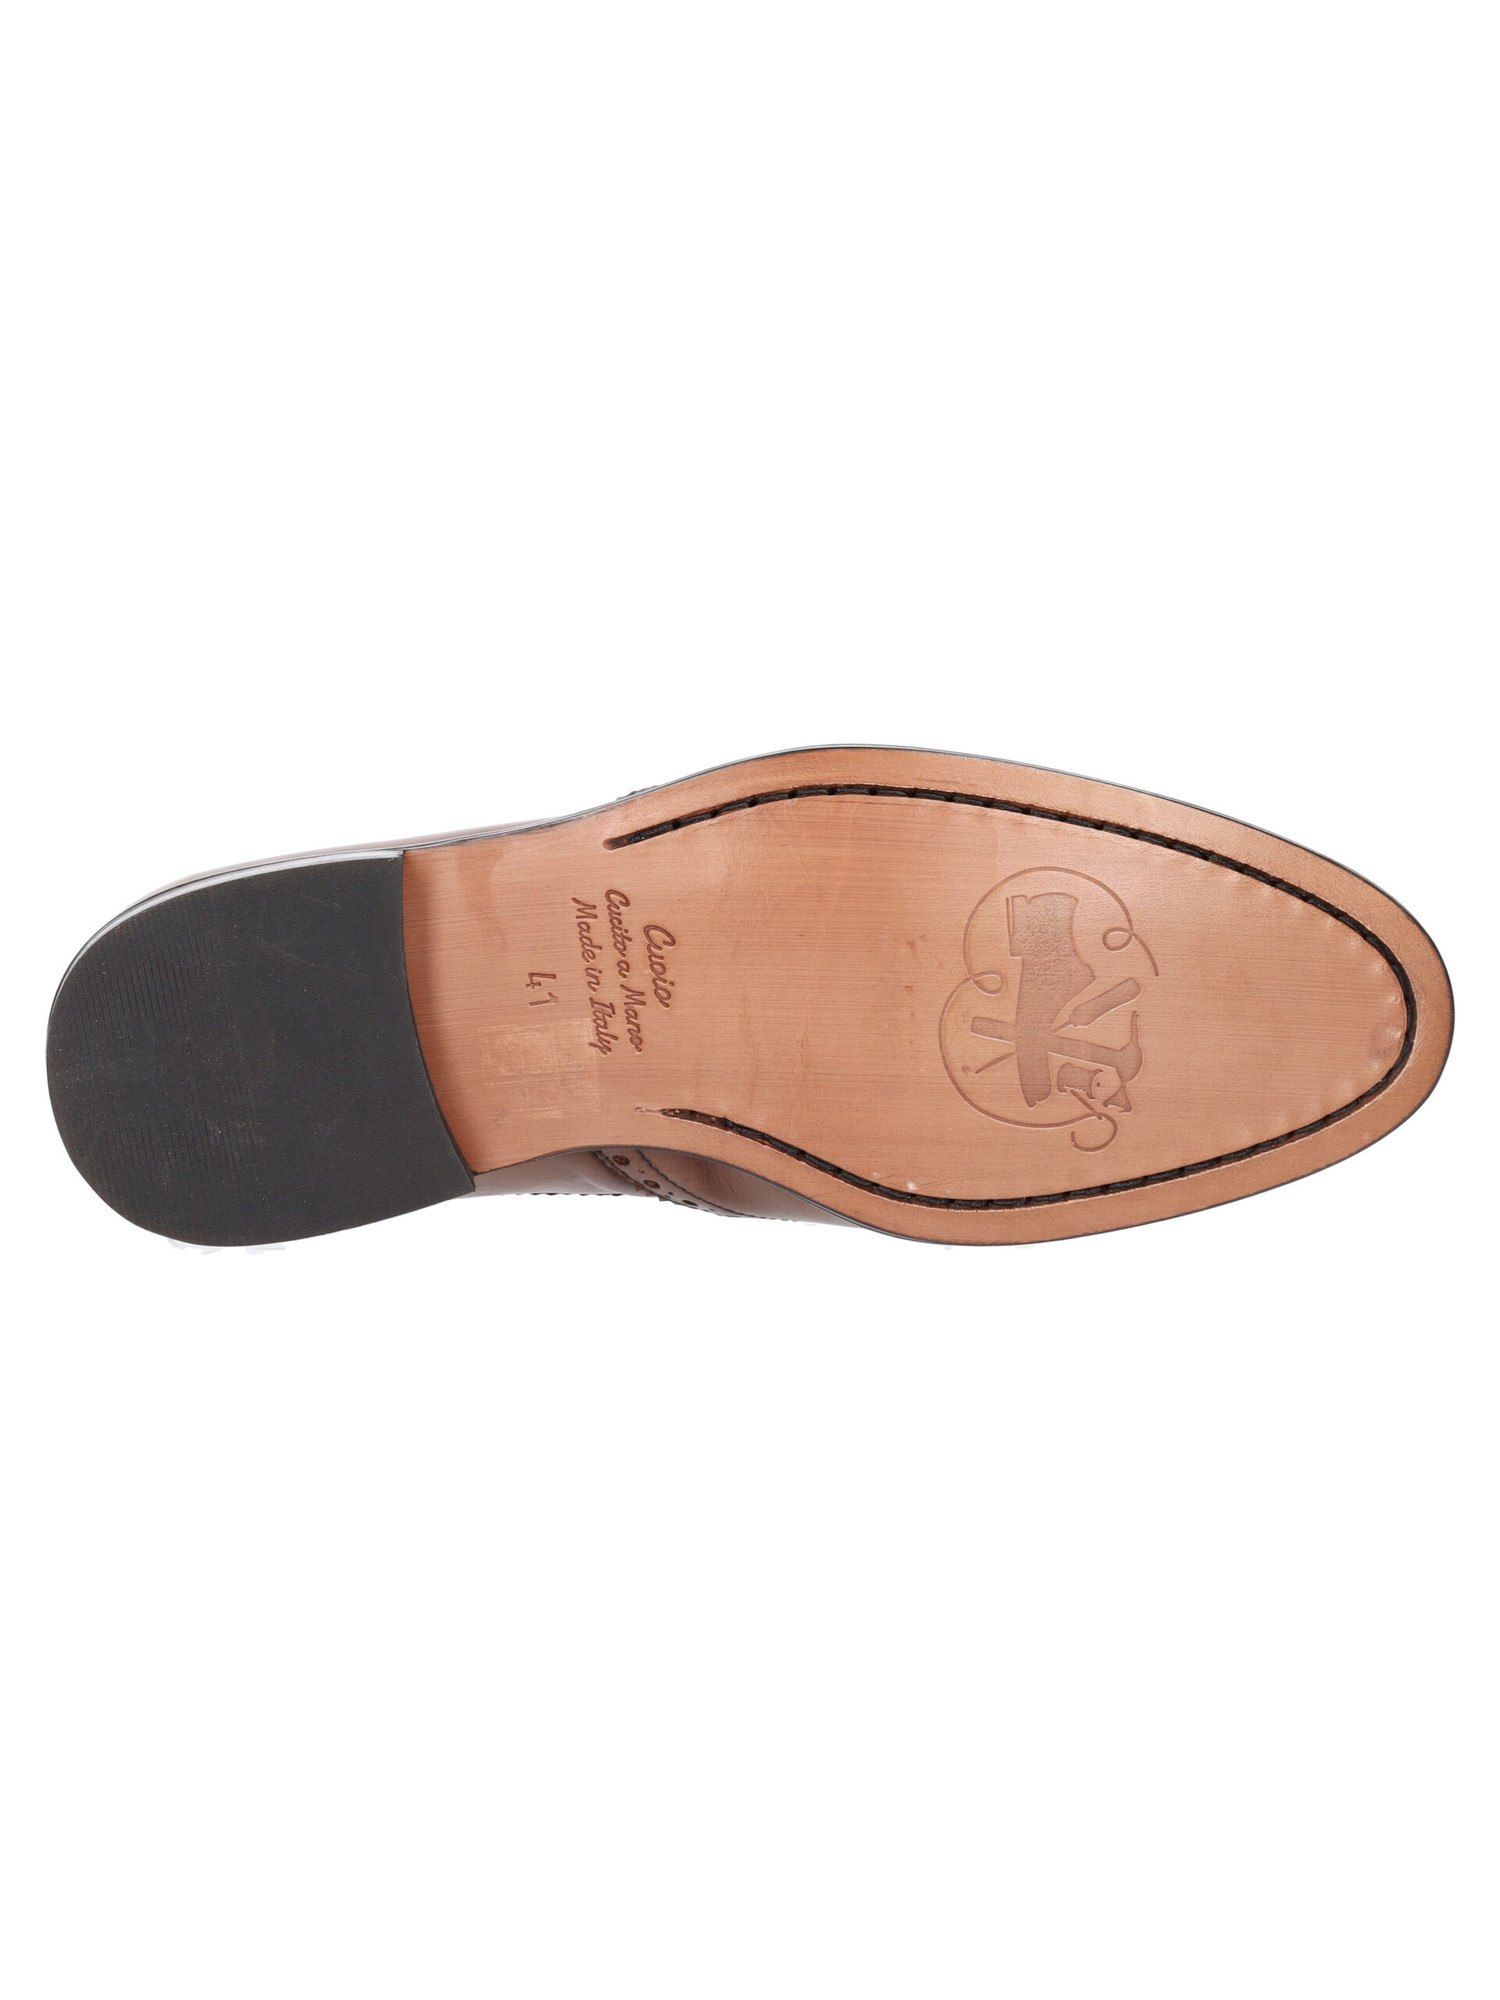 scarpa-elegante-mercanti-fiorentini-da-uomo-marrone-1a8c90